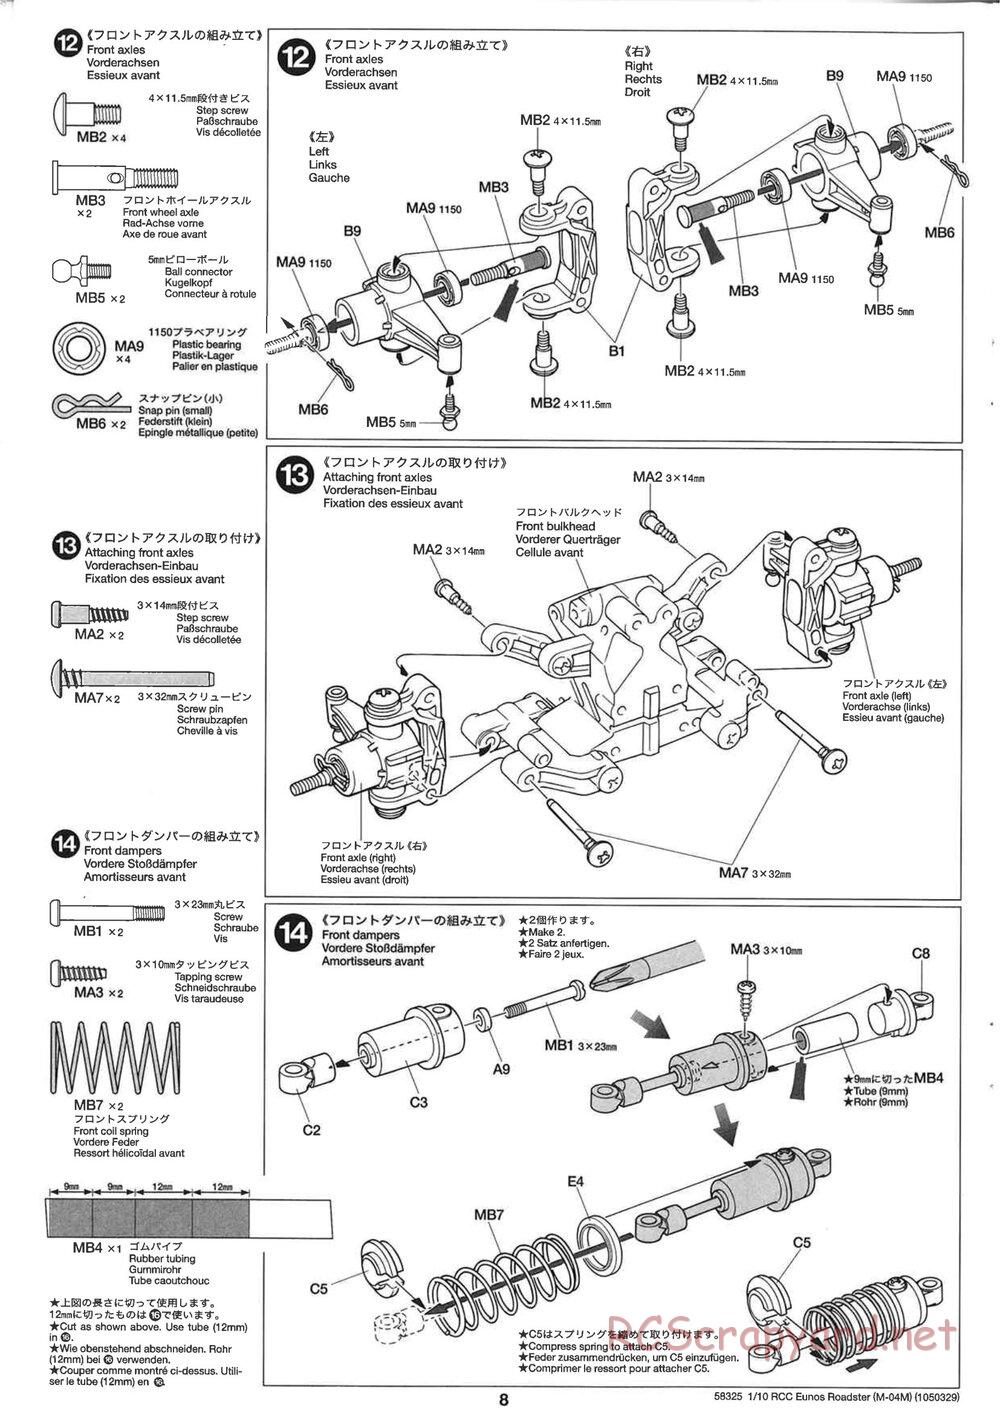 Tamiya - 58325 - Manual • Eunos Roadster - M04M • RCScrapyard - Radio ...